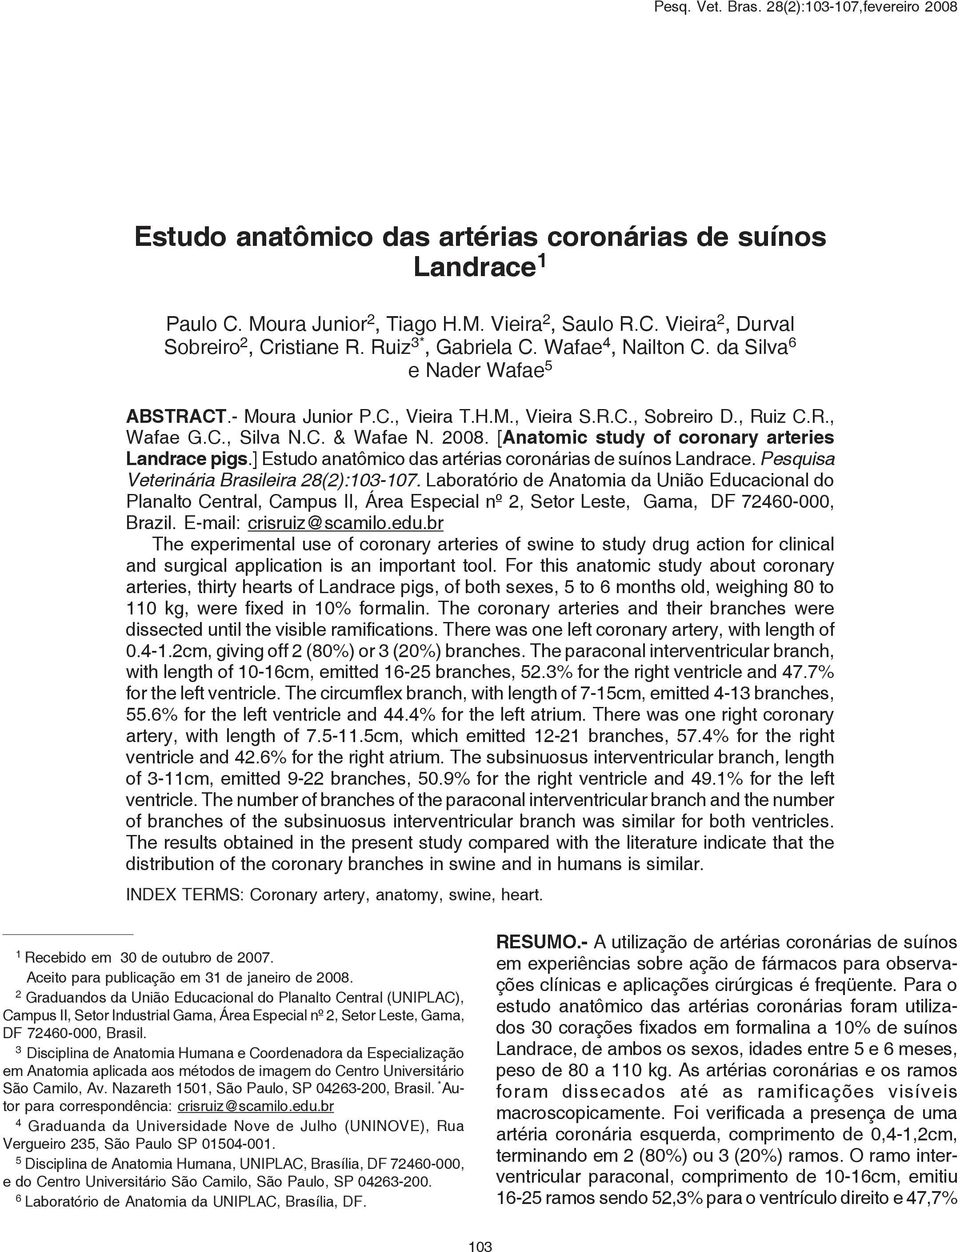 [Anatomic study of coronary arteries Landrace pigs.] Estudo anatômico das artérias coronárias de suínos Landrace. Pesquisa Veterinária Brasileira 28(2):103-107.